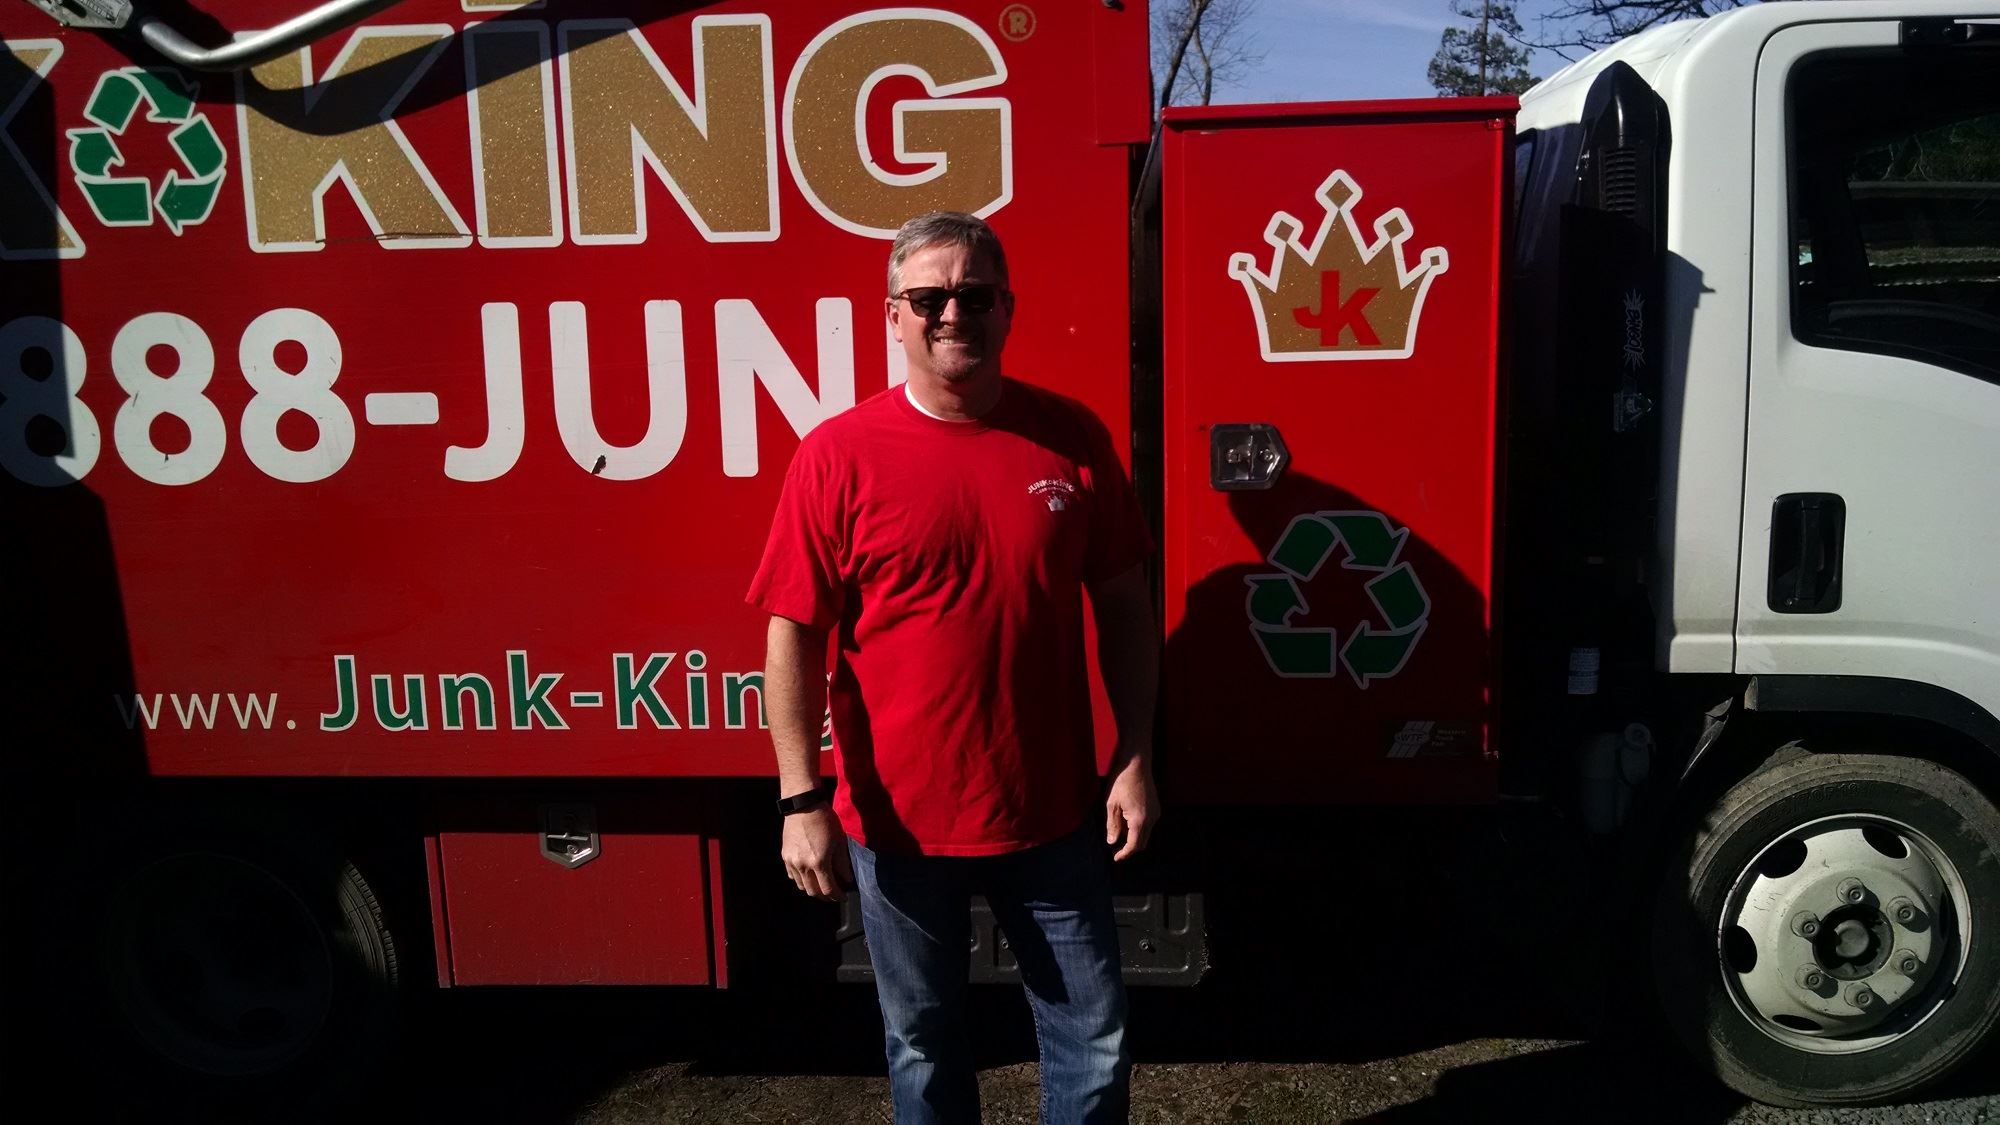 Junk King Franchise Owner, Matt Verga and Maggie Verga.